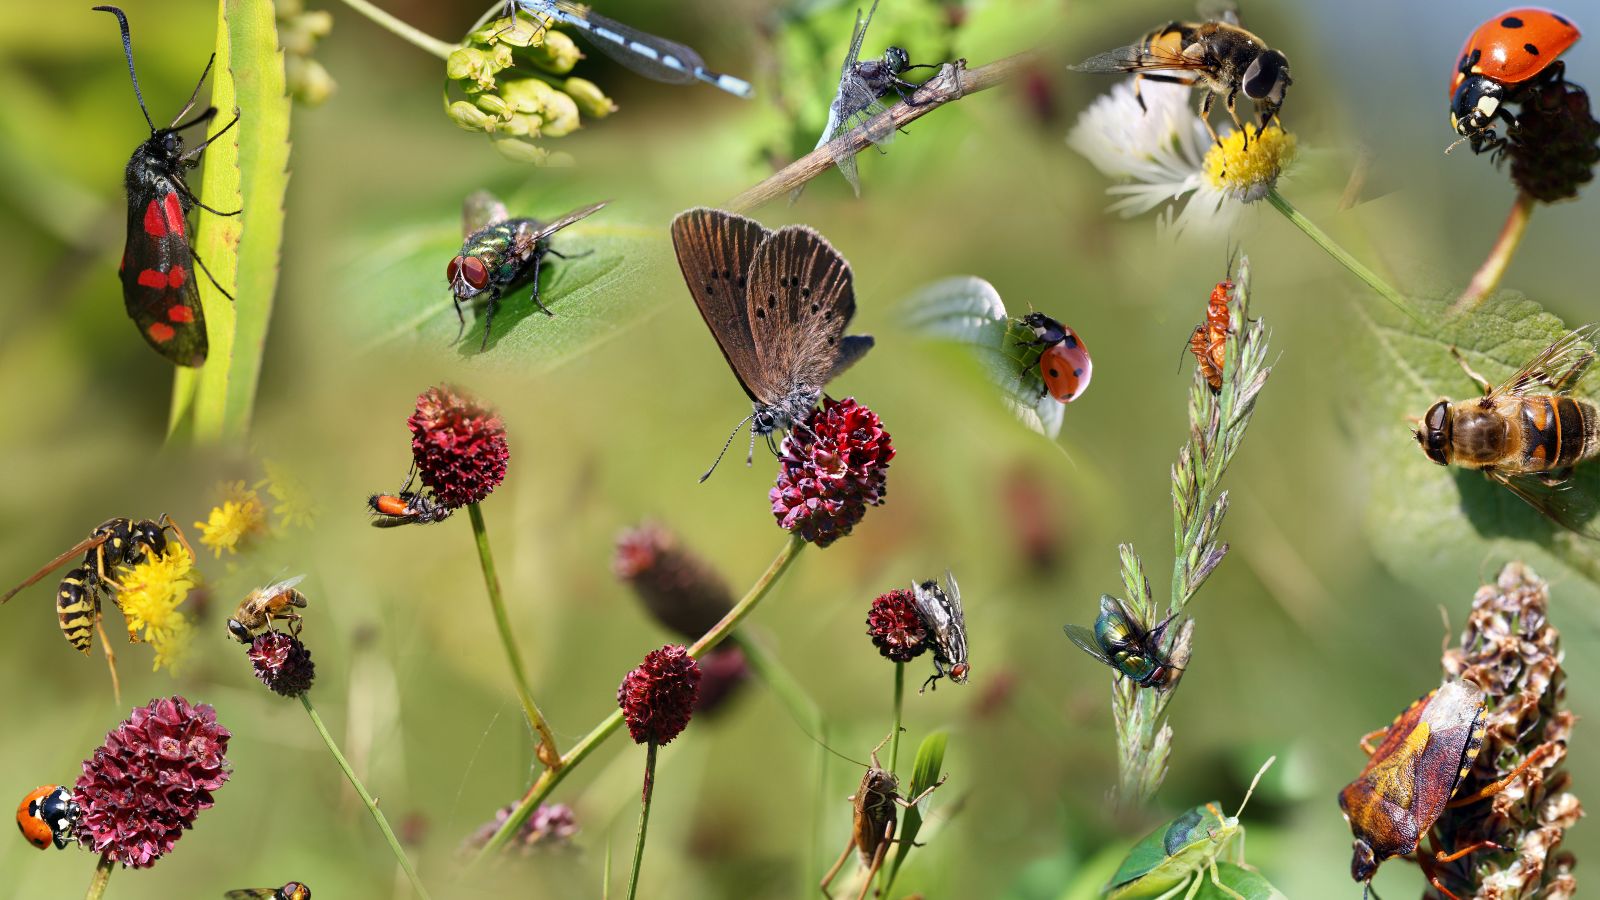 Die digitale Kollage zeigt diverse heimische Insekten auf verschiedenen Blütenständen.